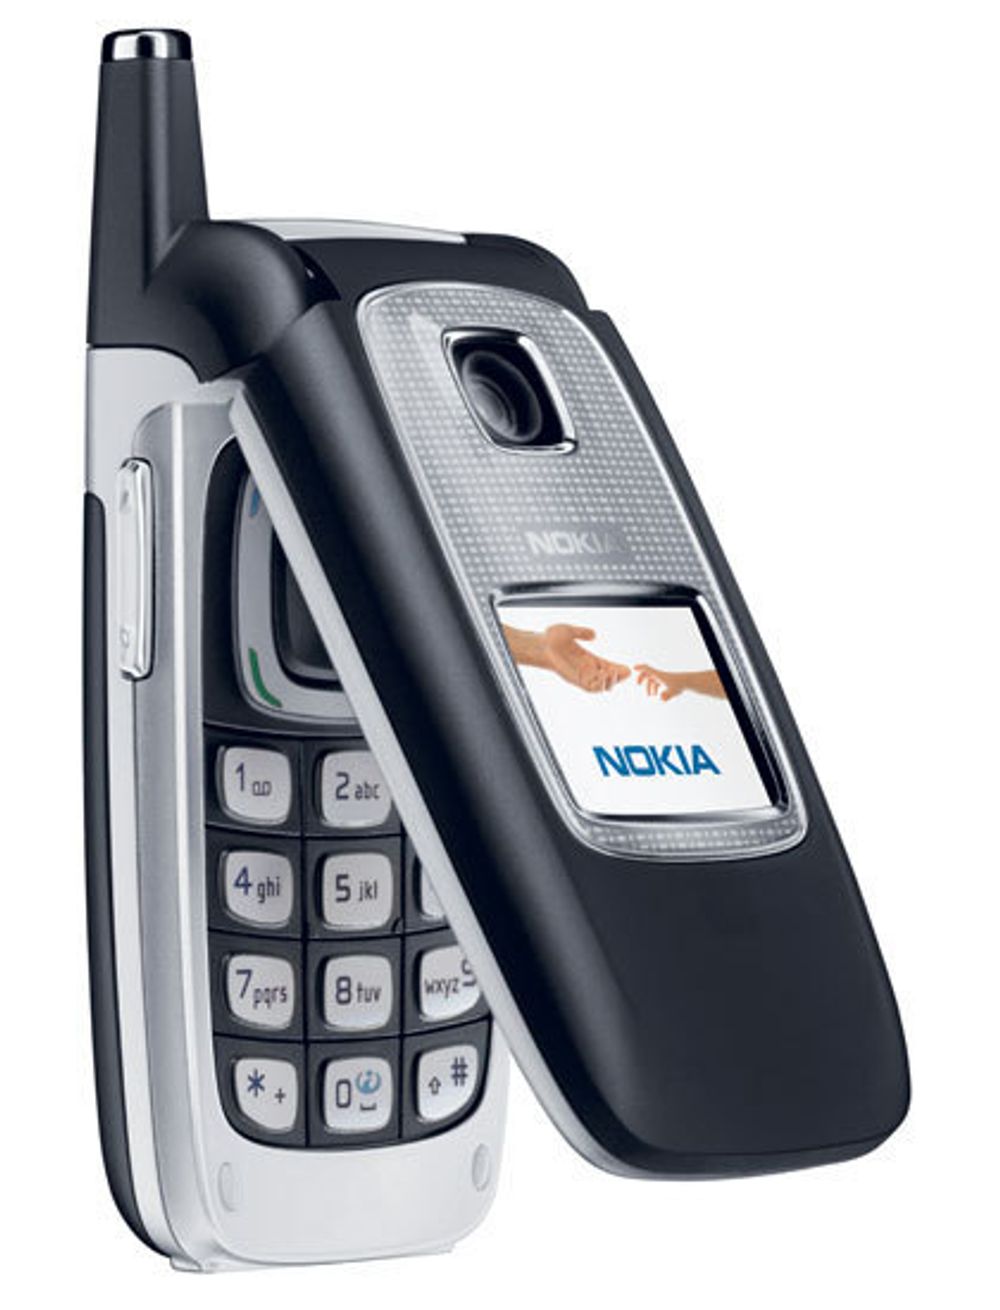 Nokia 6103 mobiltelefon med EDGE og Blåtann.